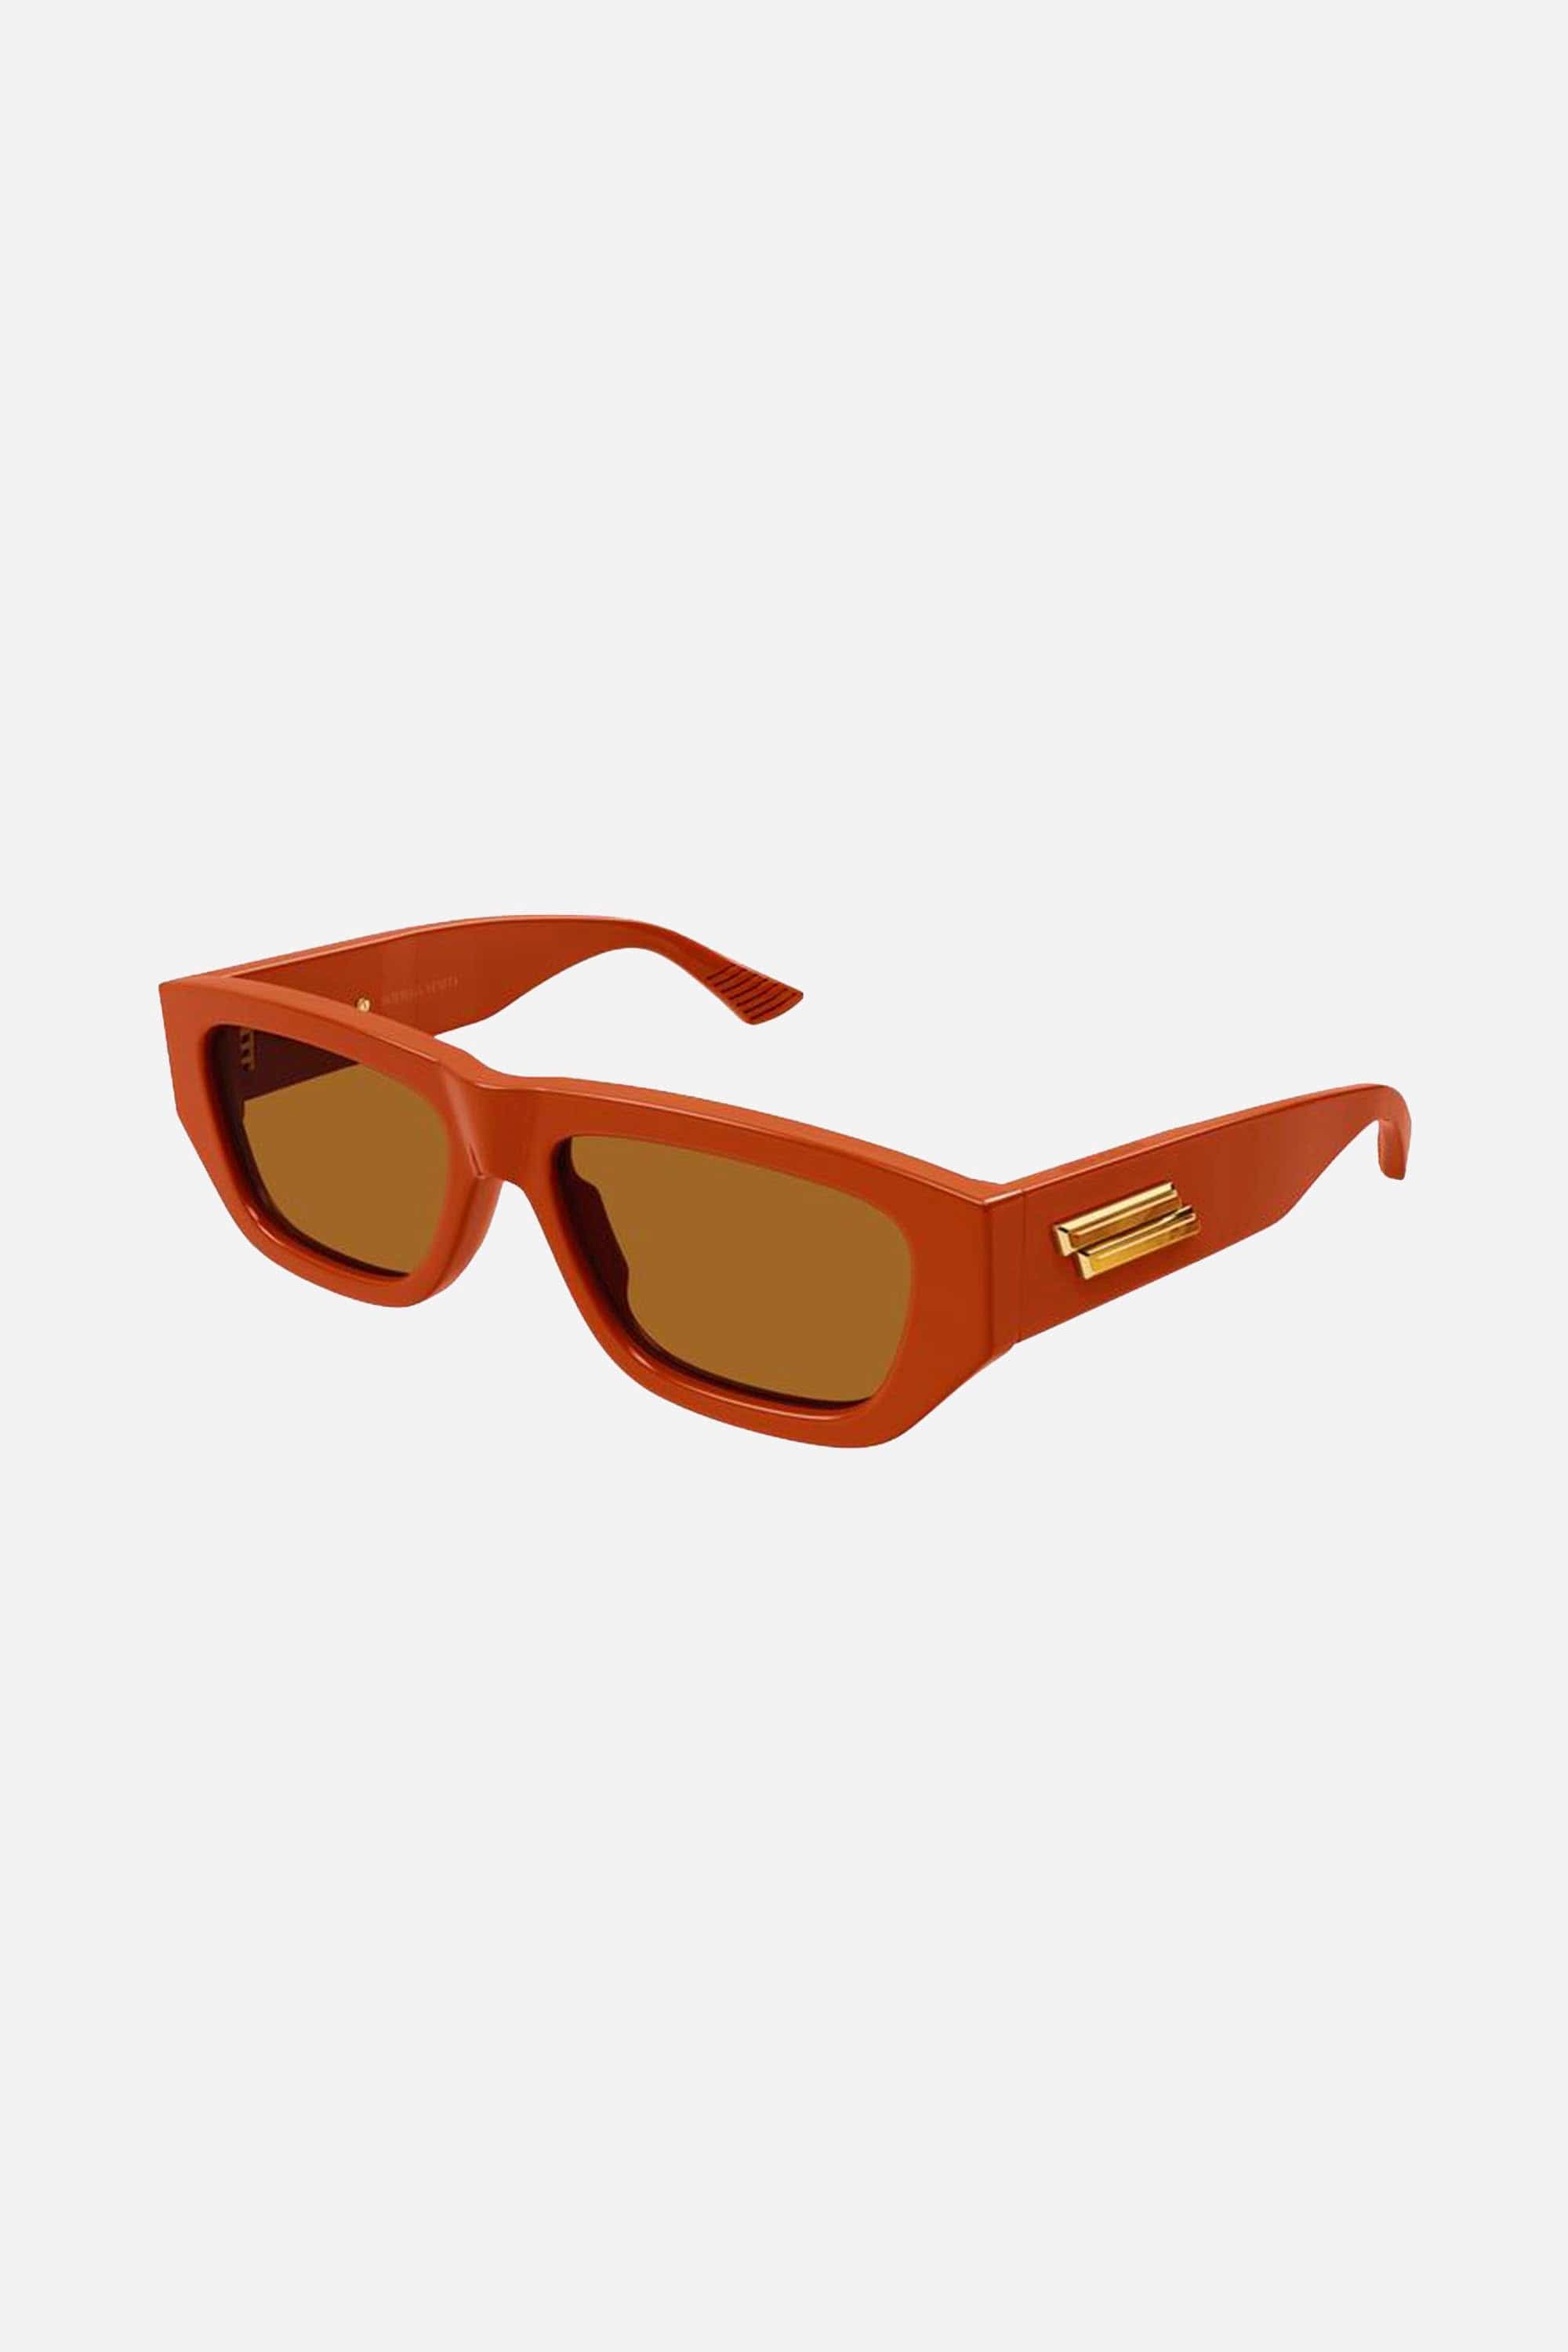 Bottega Veneta rectangular orange sunglasses - Eyewear Club